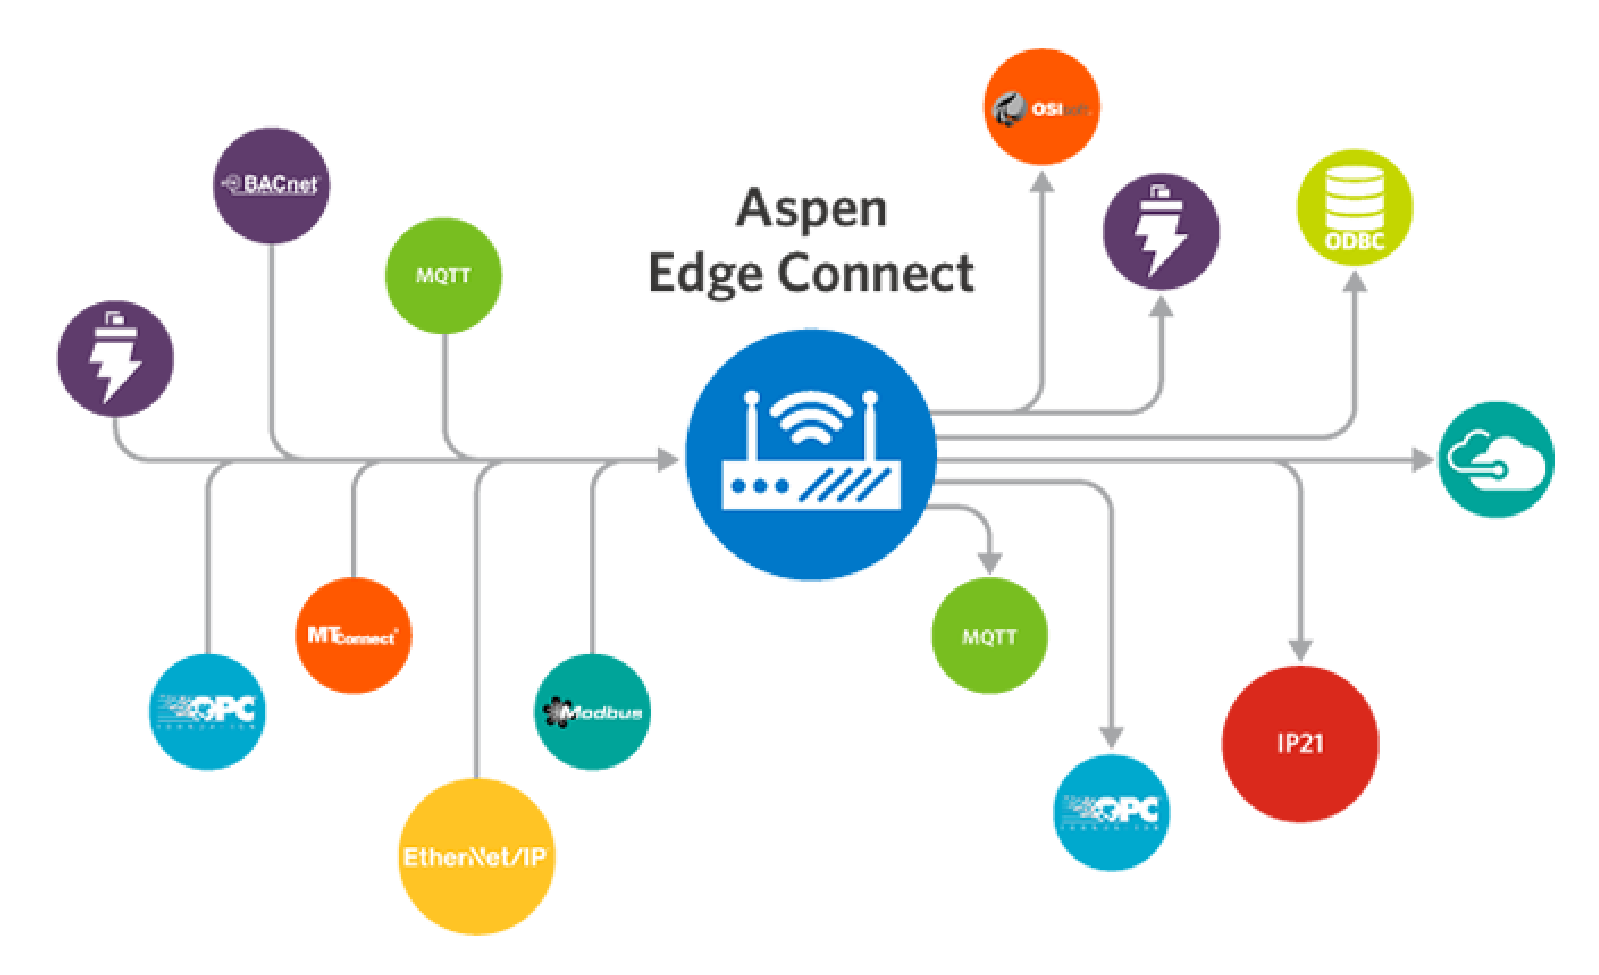 23. OT Asset Optimisation APM Aspen Edge Connect